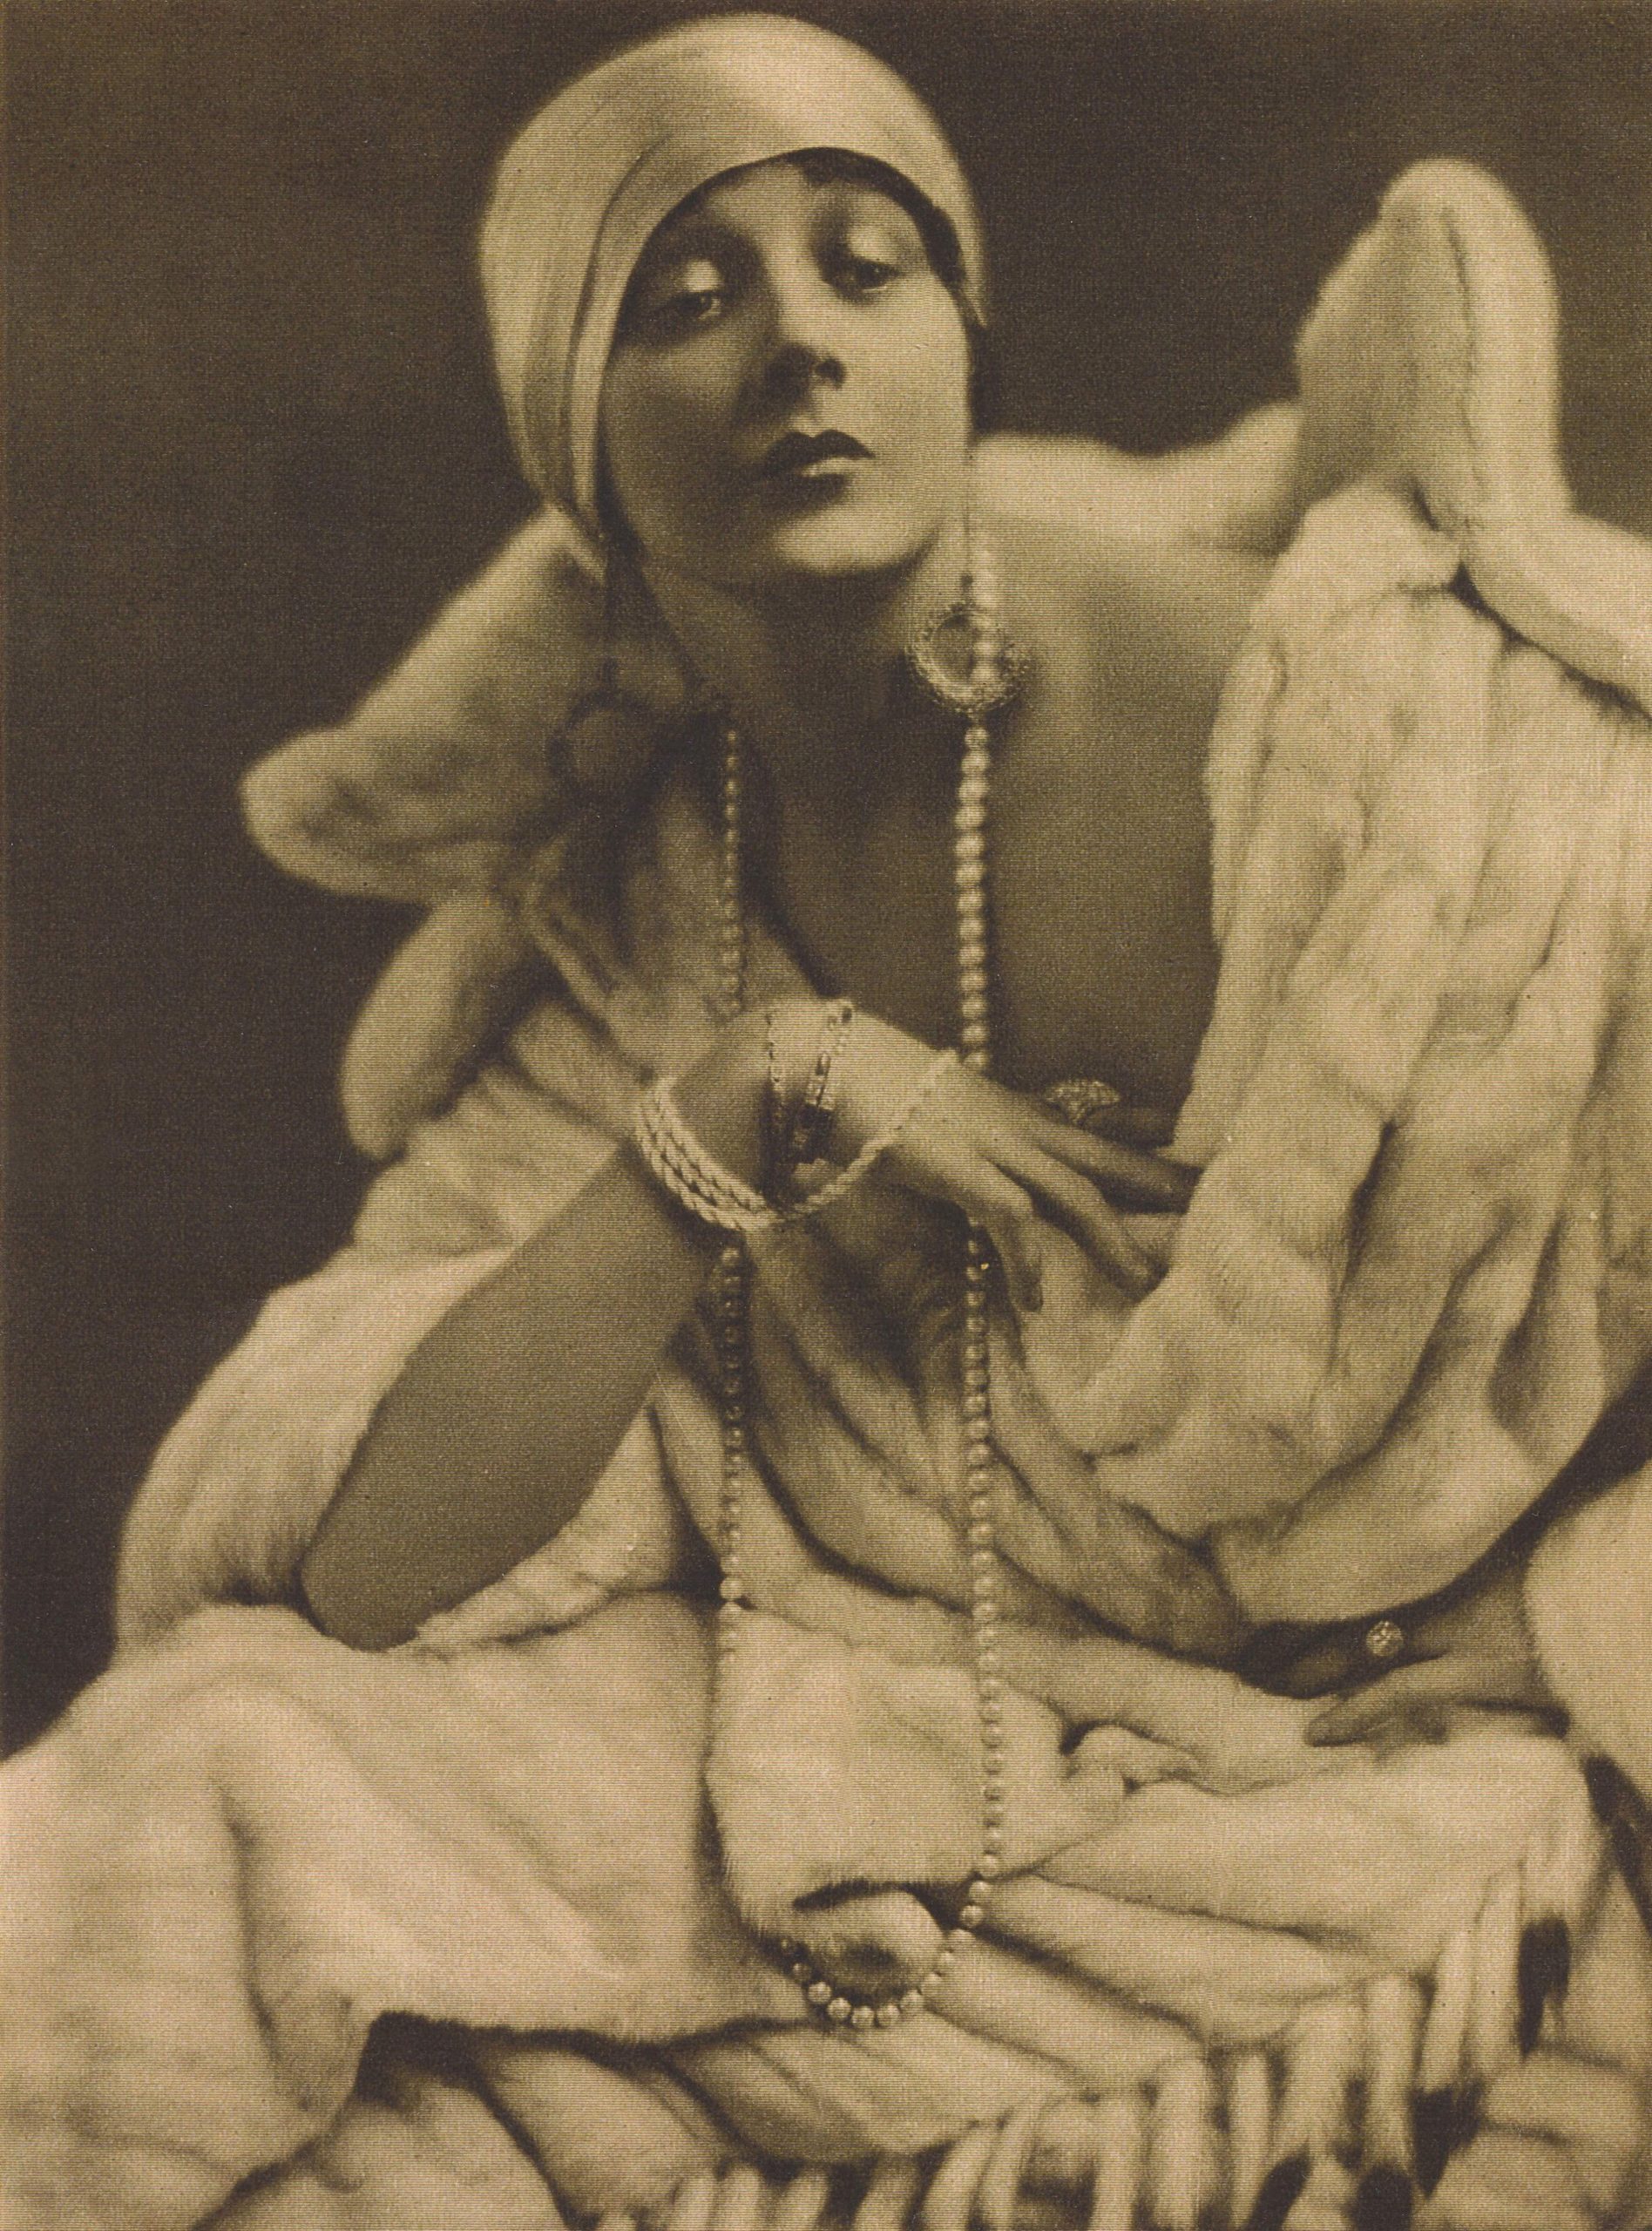 Barbara La Marr, 1923